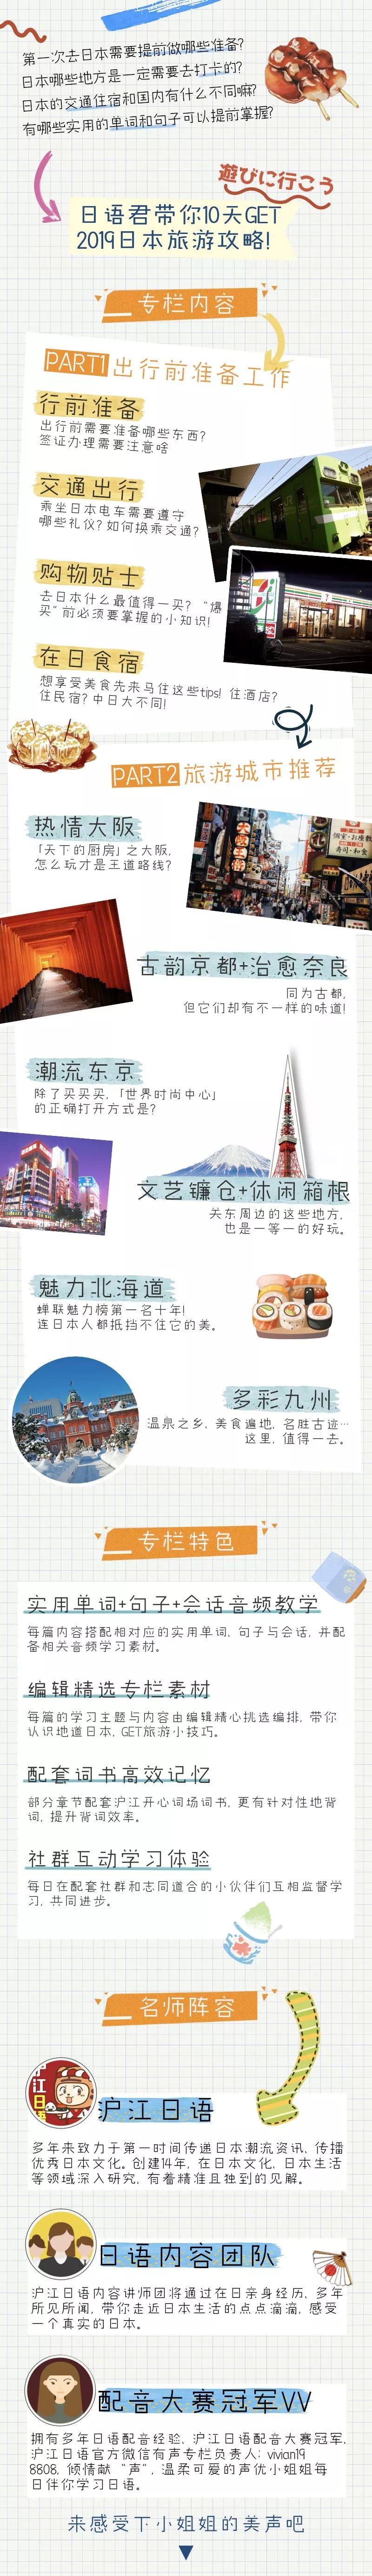 为什么大部分中国人首次去日本旅游会选择 大阪 而不是 东京 外国